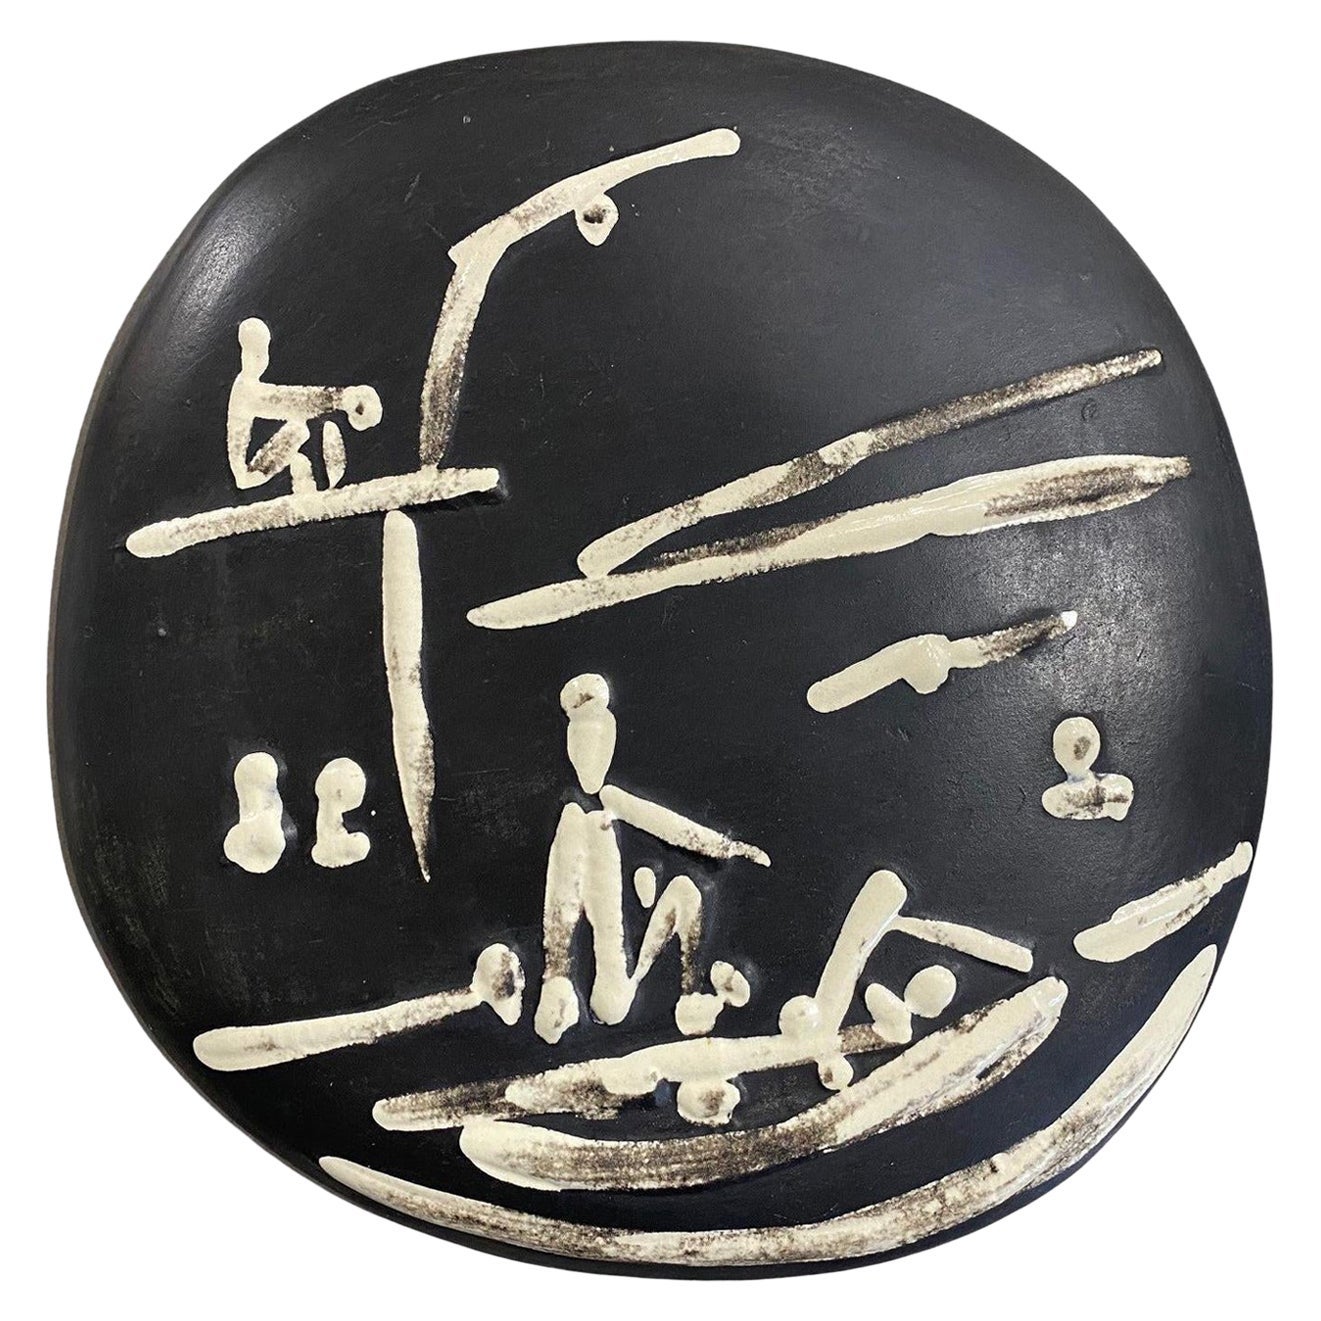 Pablo Picasso Signed Ceramic Plate, Scène De Plage Edition Picasso Madoura, 1956 For Sale